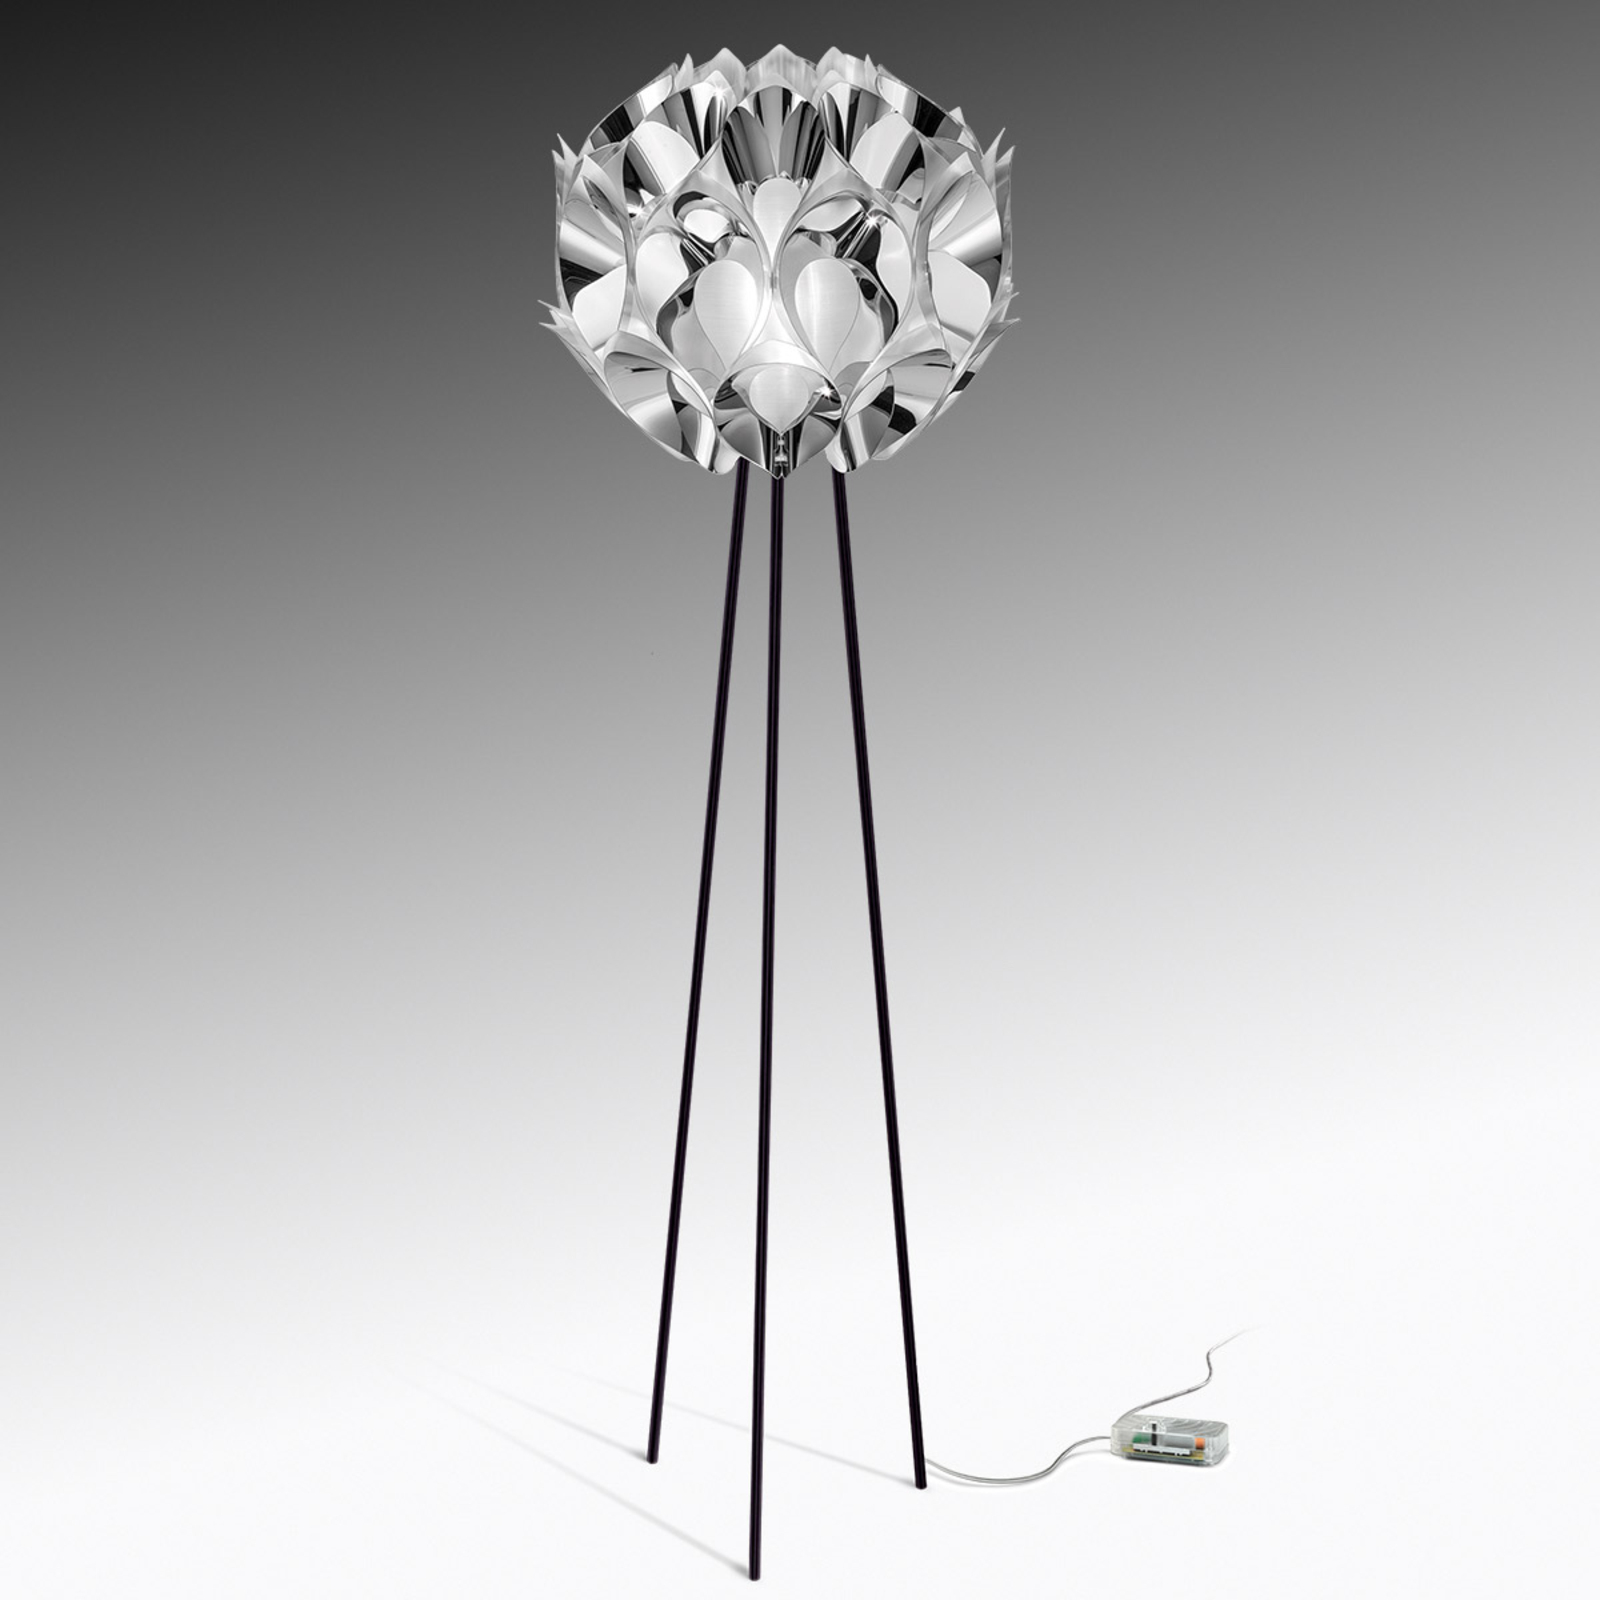 Slamp Flora – dizajnérska stojaca lampa, striebro